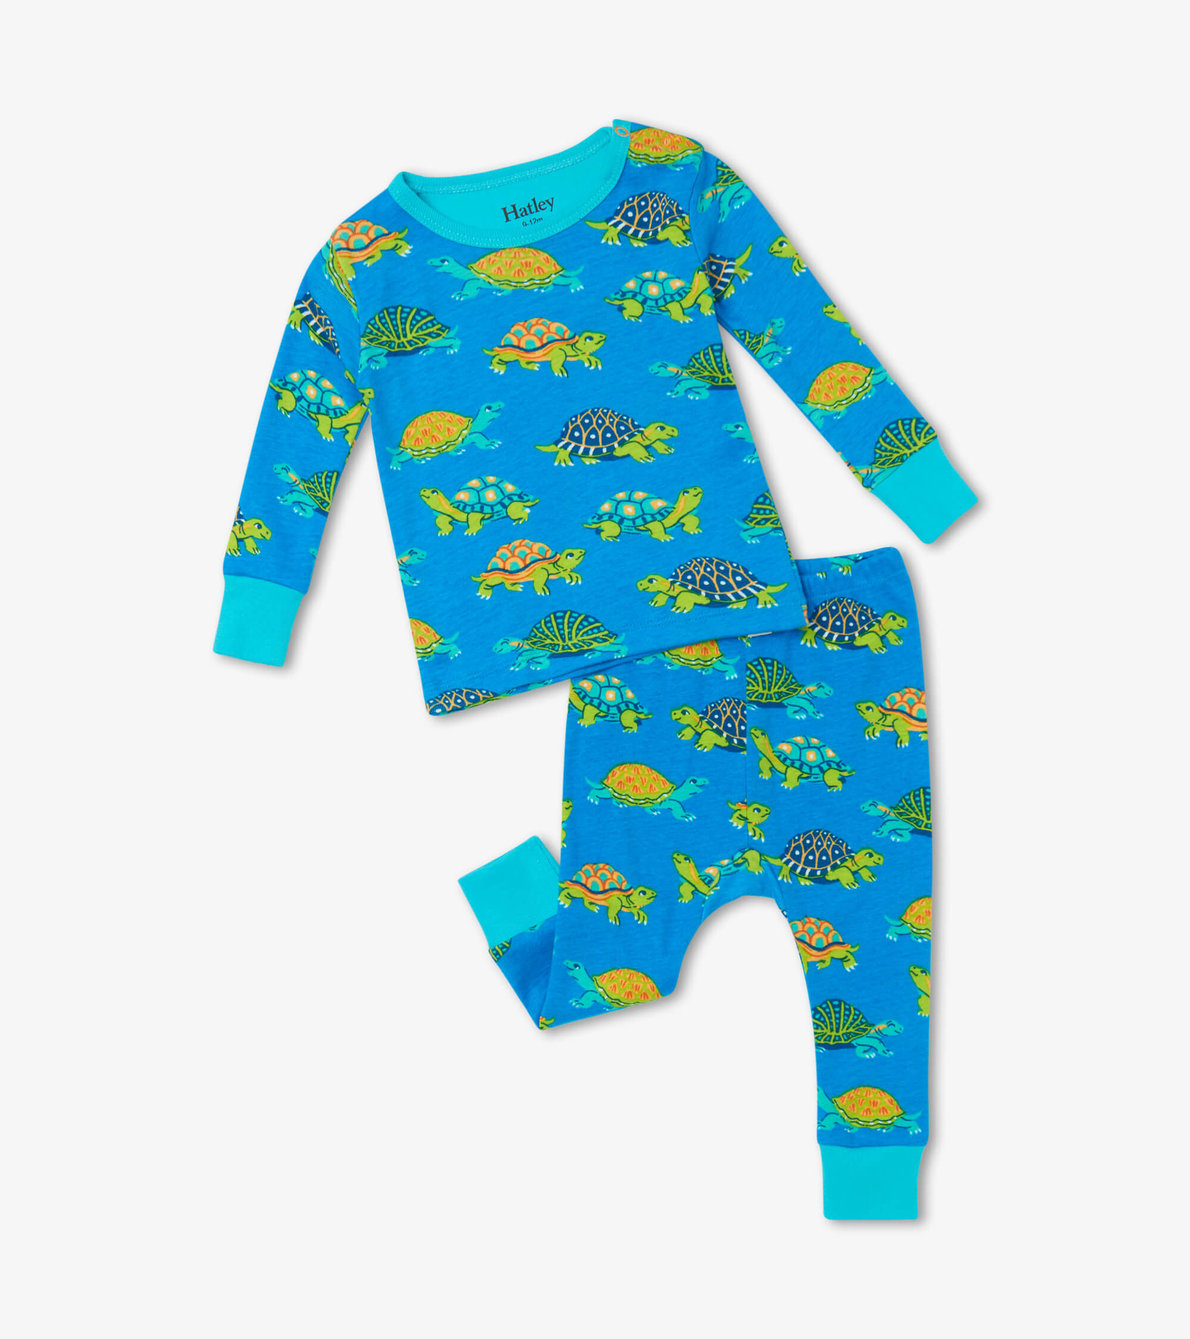 View larger image of Baby Turtles Organic Cotton Baby Pajama Set